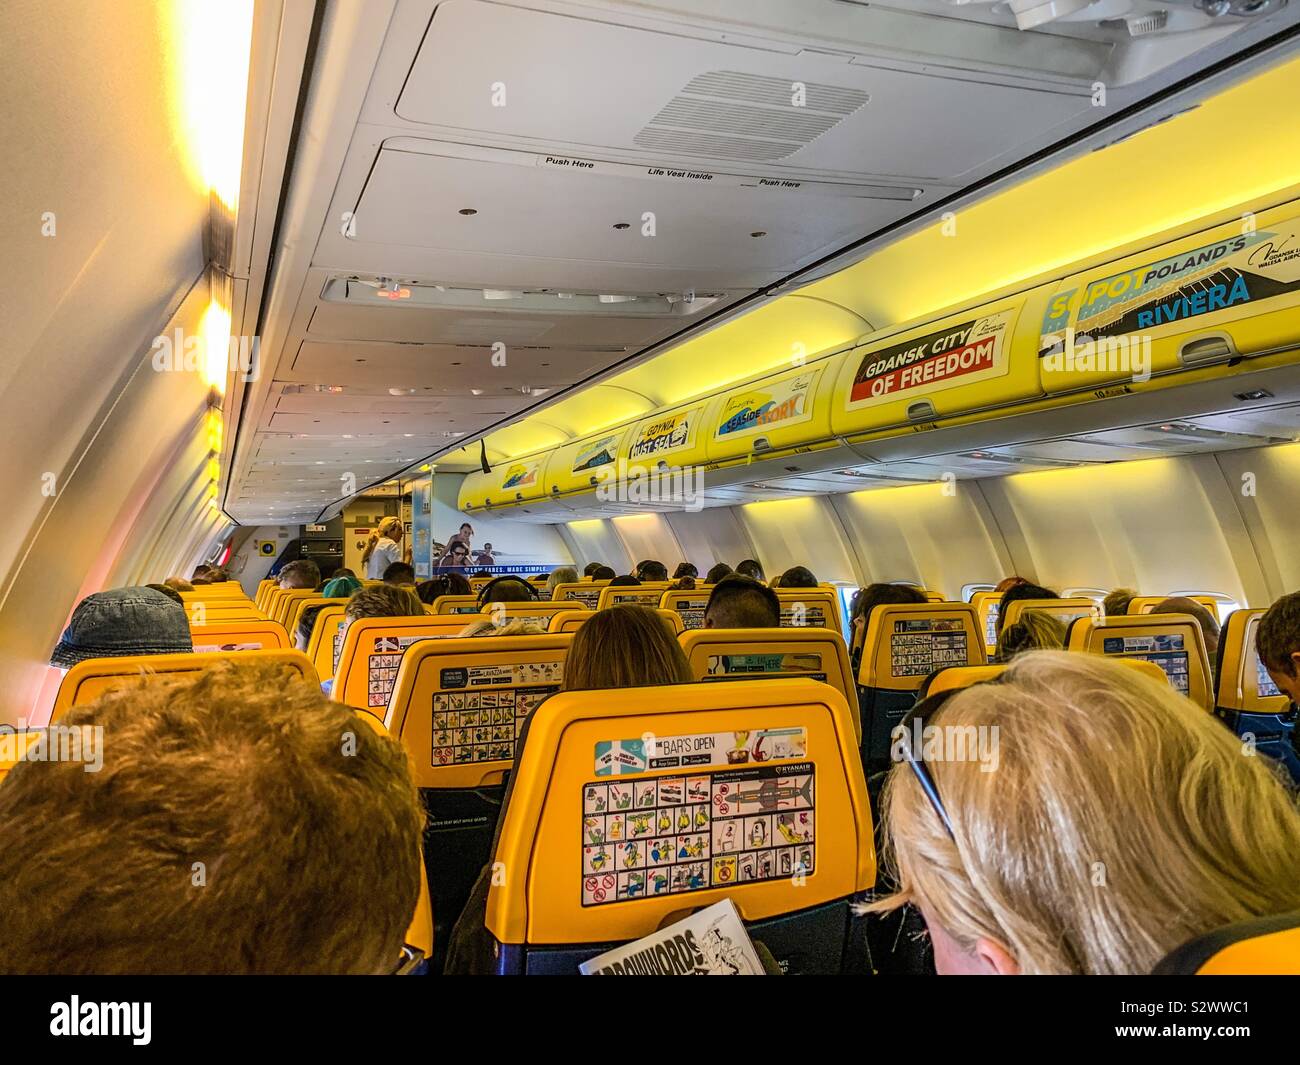 All'interno della cabina di un volo Ryanair Foto stock - Alamy